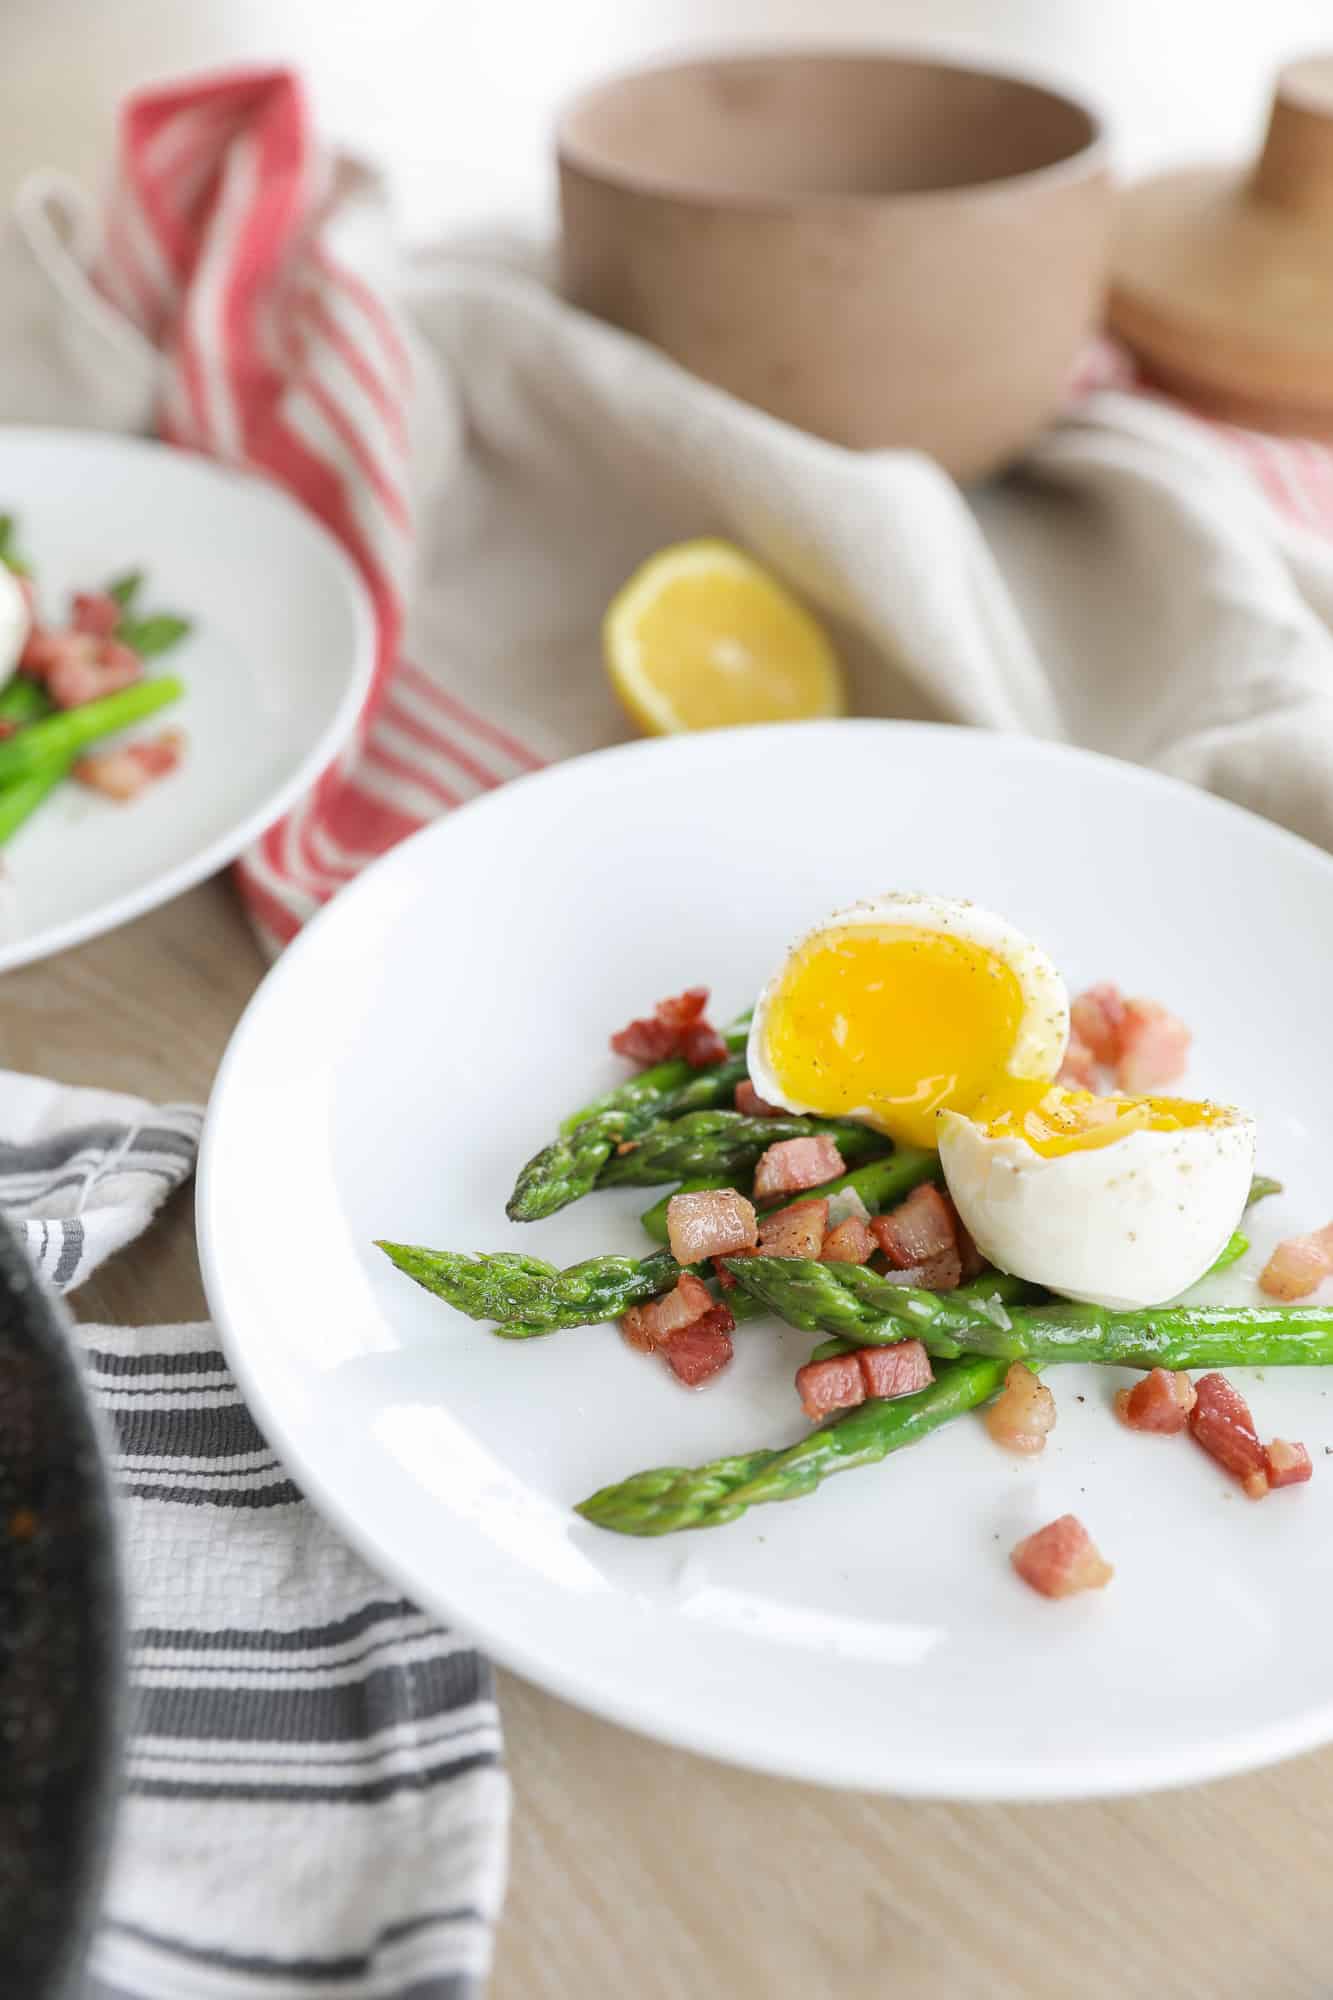 Chris Cooks | Easy Breakfast: Eggs & Asparagus